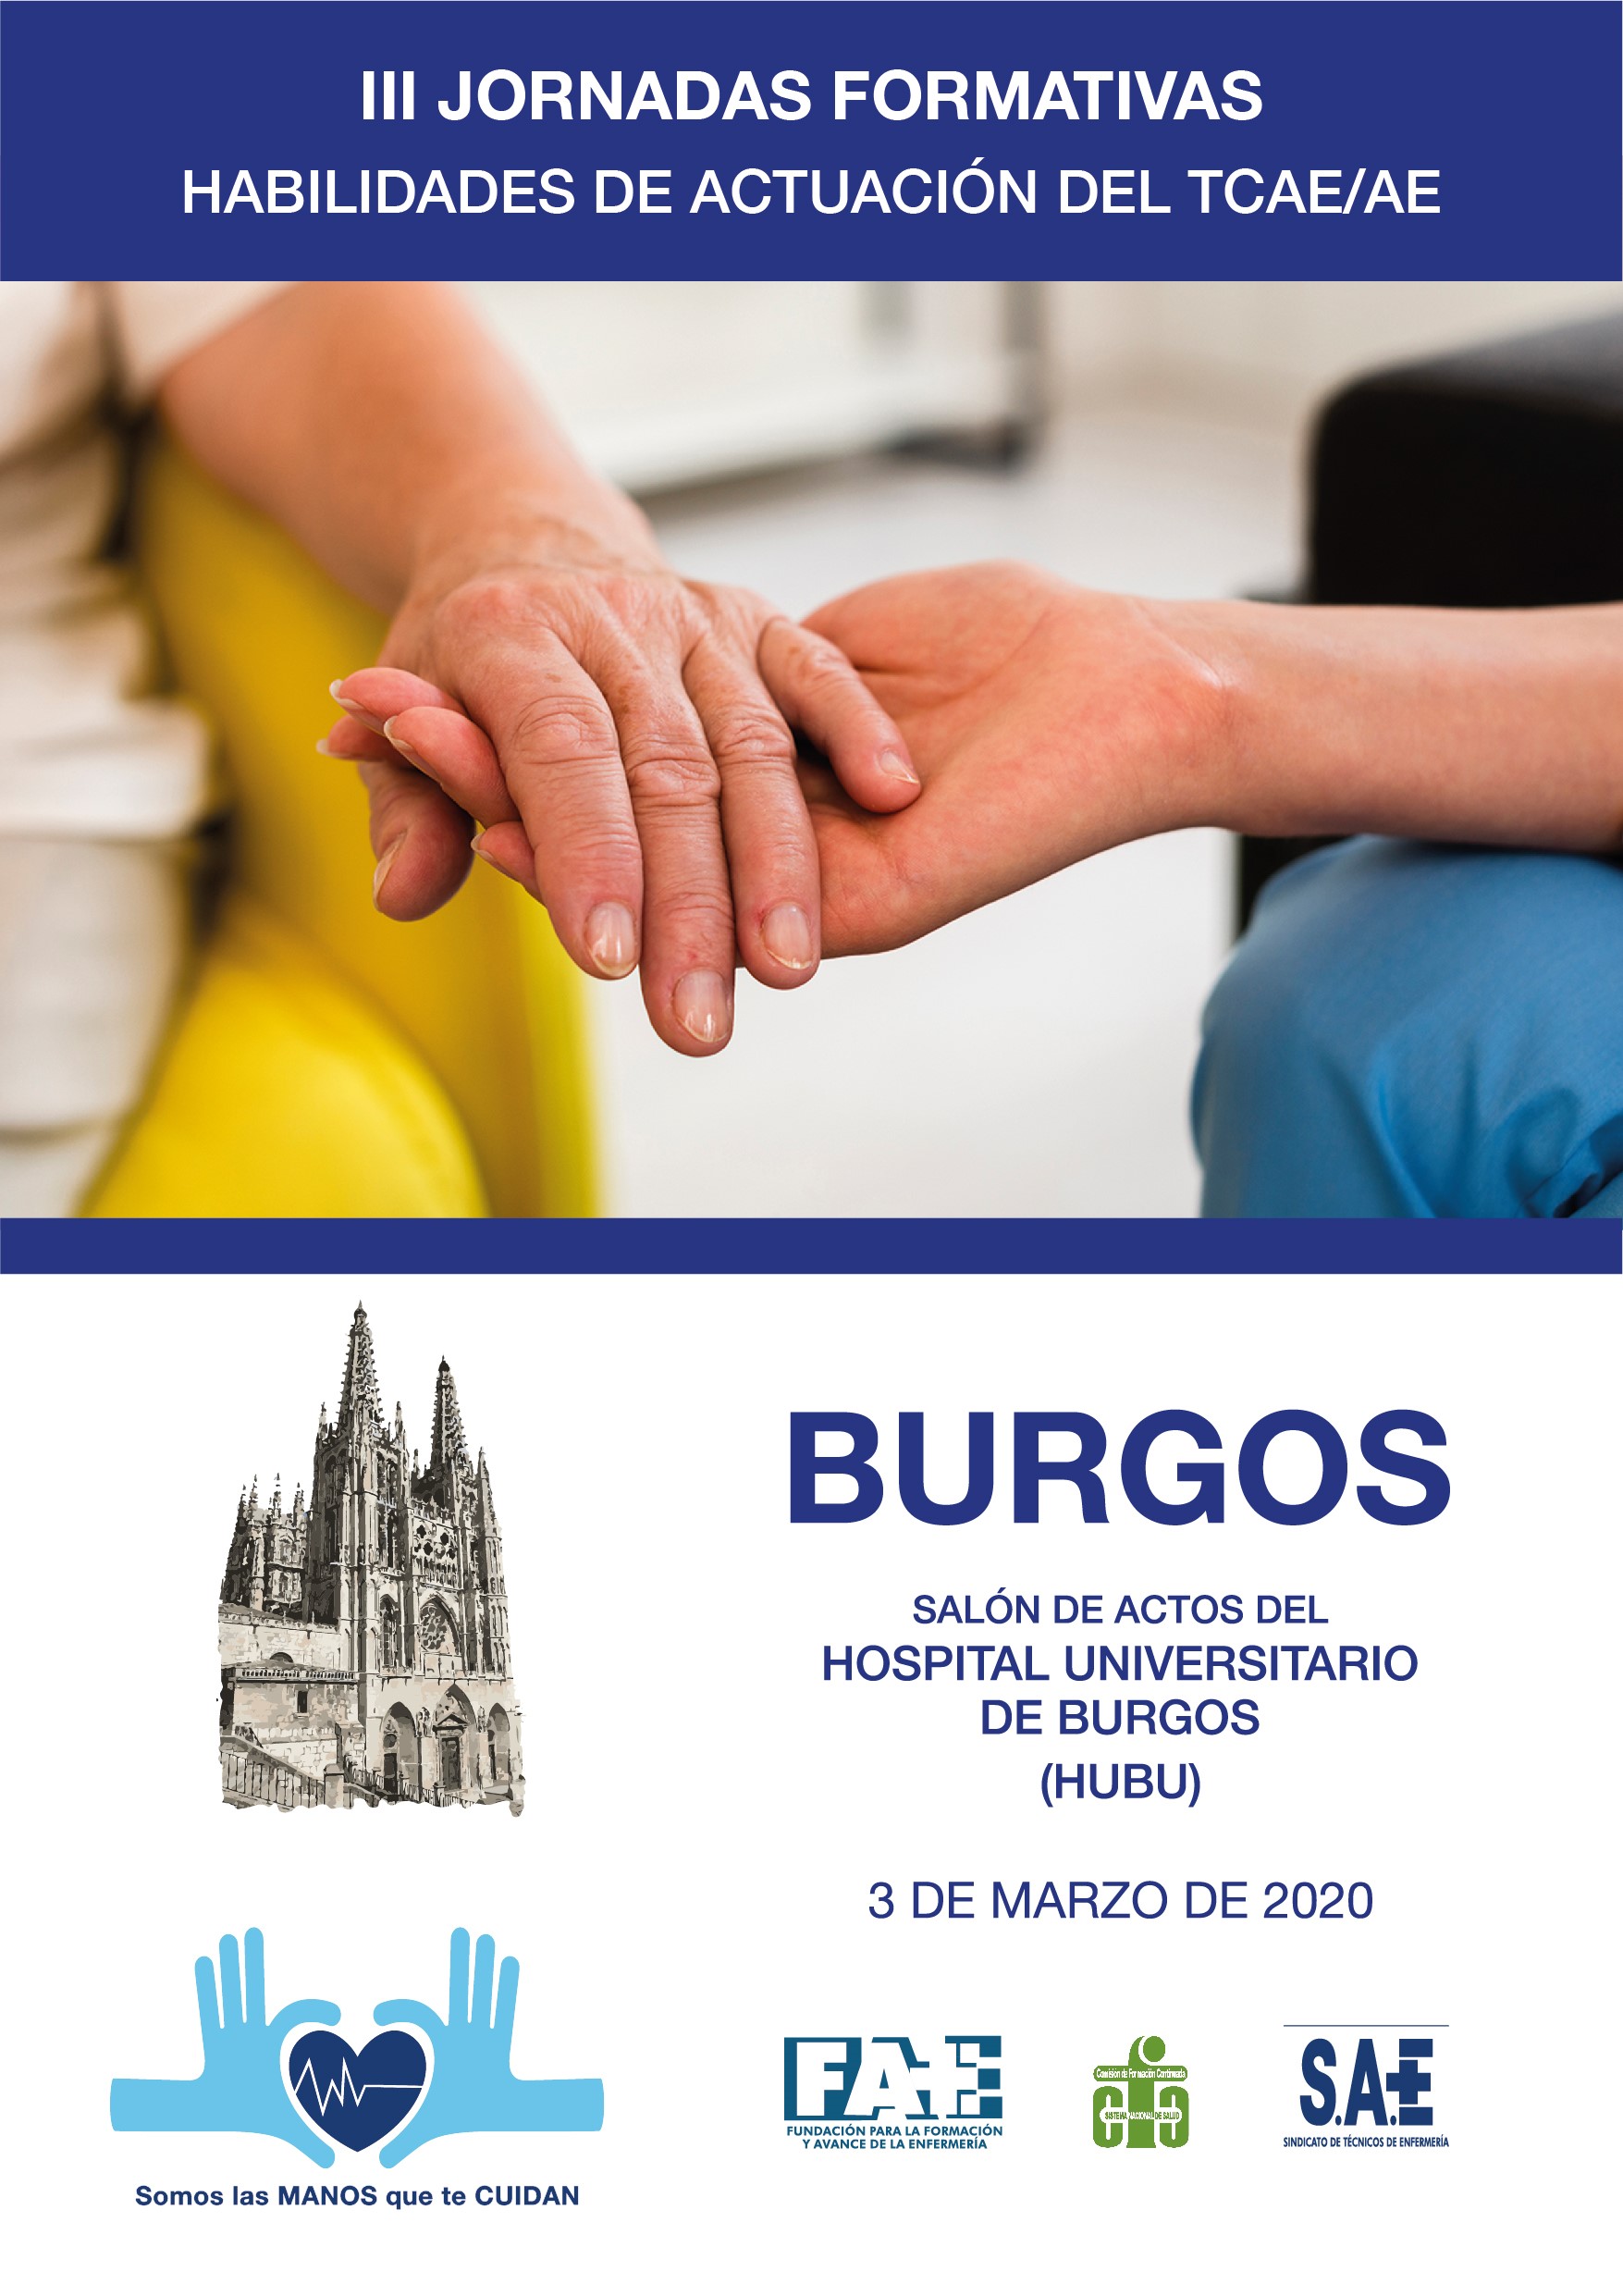 III Jornadas Formativas de Burgos